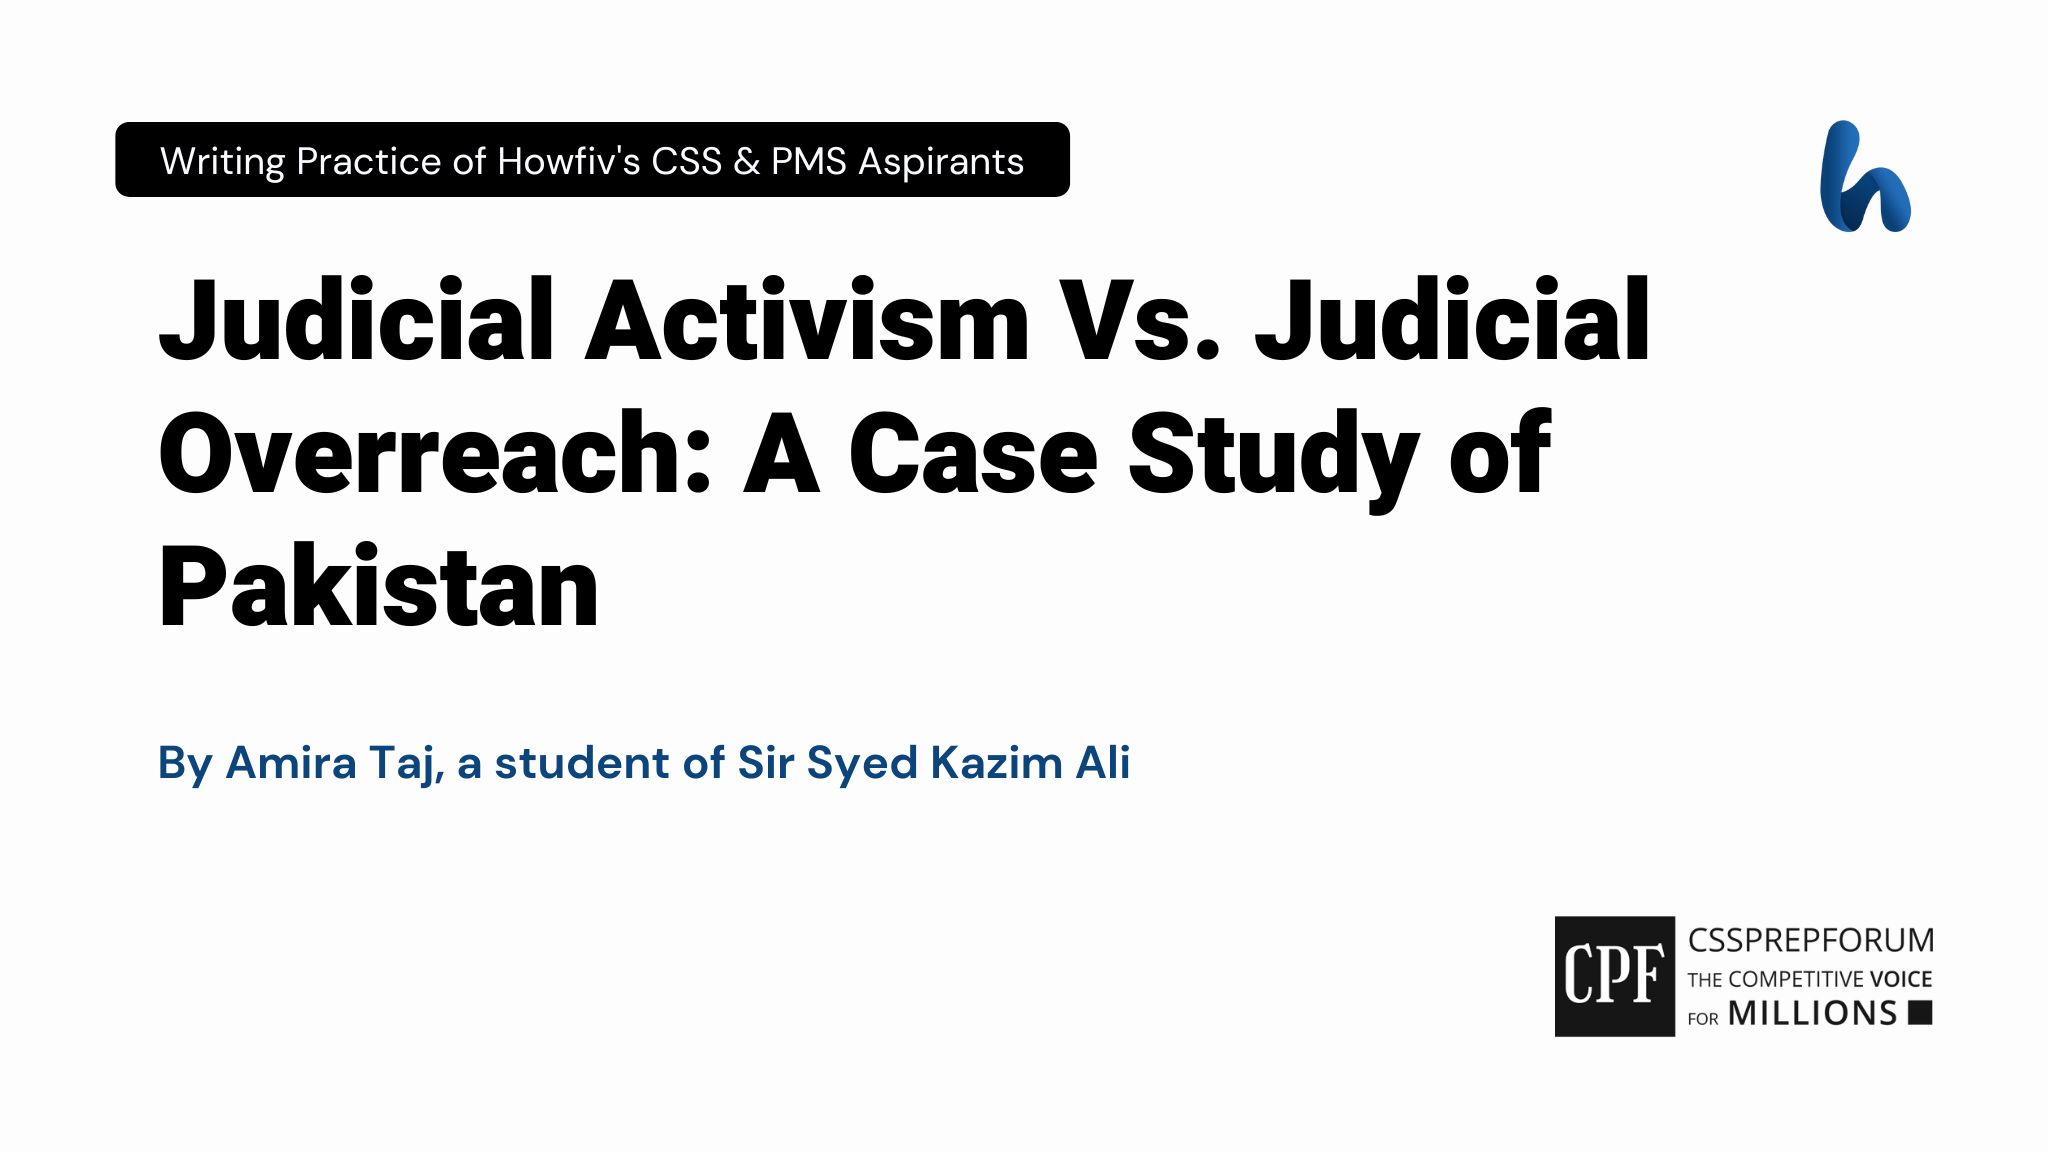 Judicial Activism Vs. Judicial Overreach: A Case Study of Pakistan